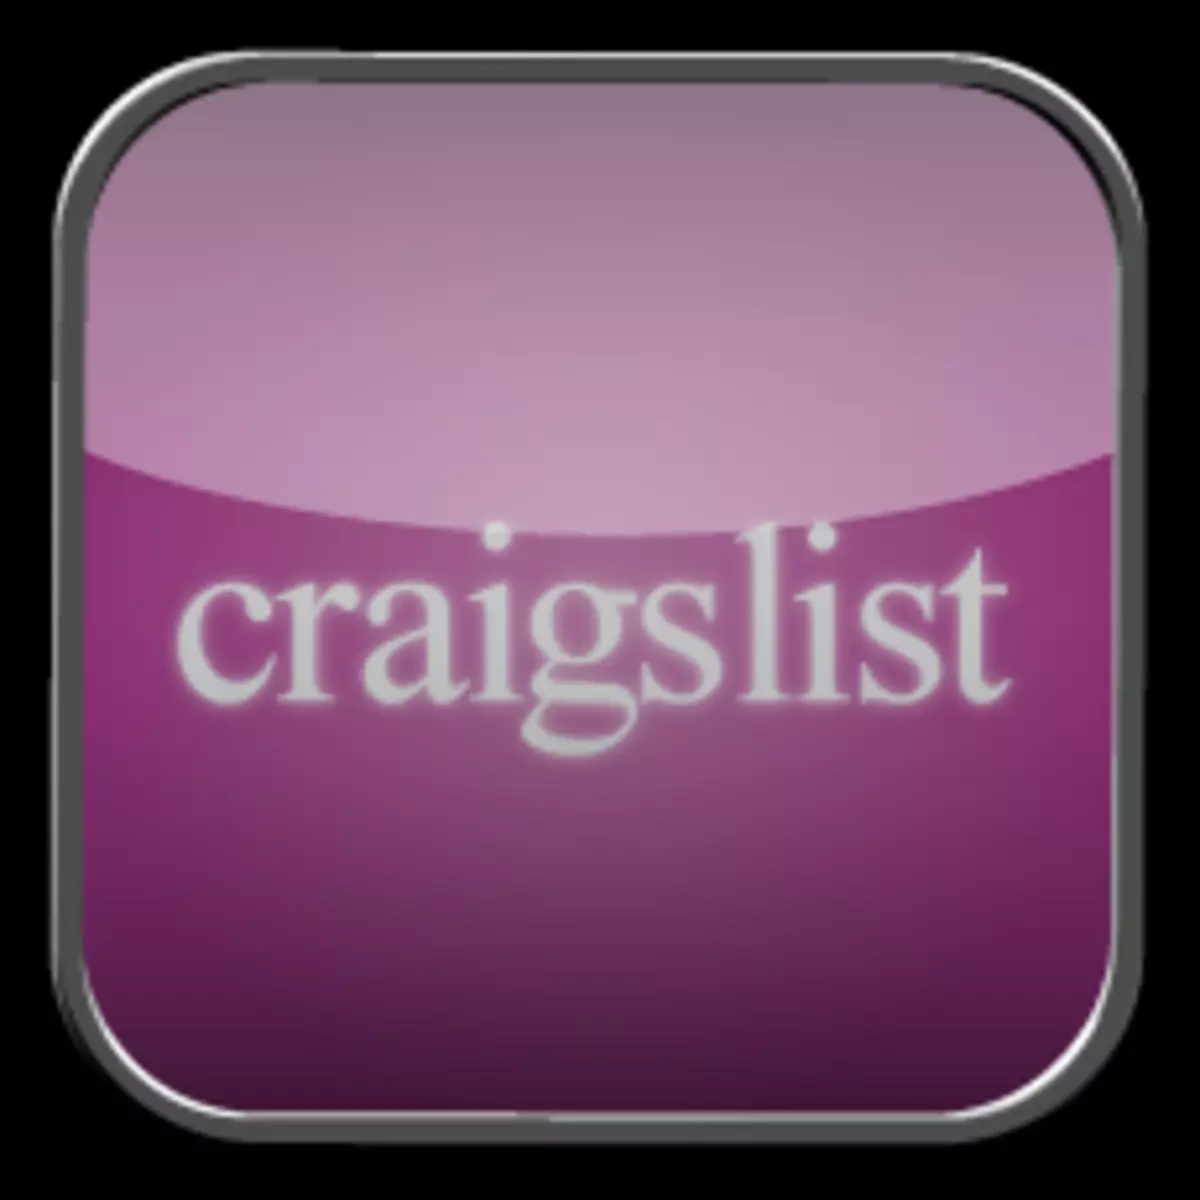 Craigslist logo.